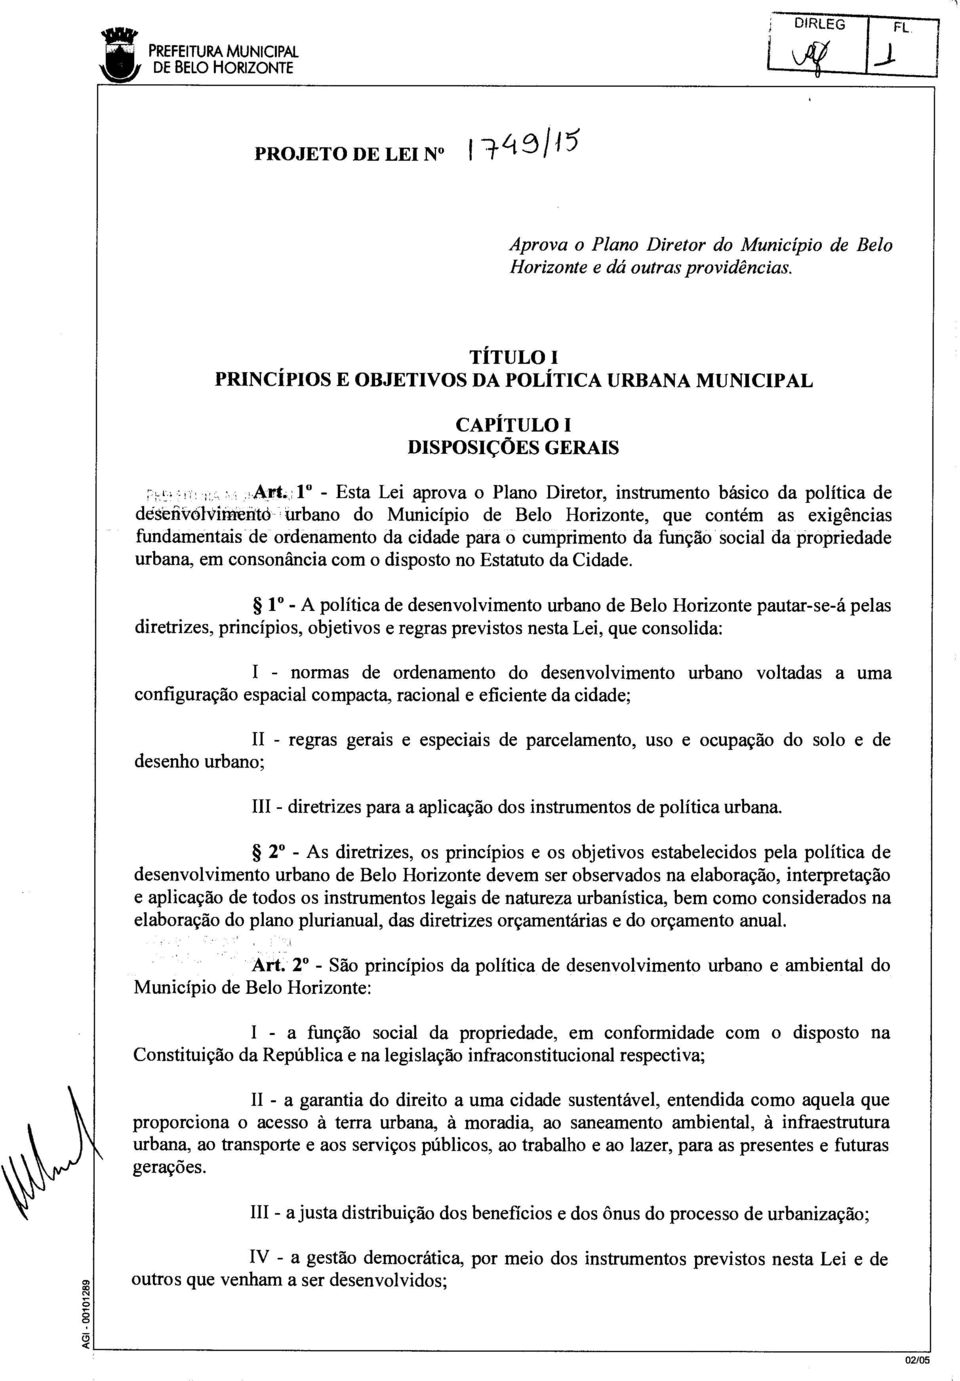 1 - Esta Lei aprova o Plano Diretor, instrumento básico da política de désefivolvitnento urbano do Município de Belo Horizonte, que contém as exigências fundamentais de ordenamento da cidade para o